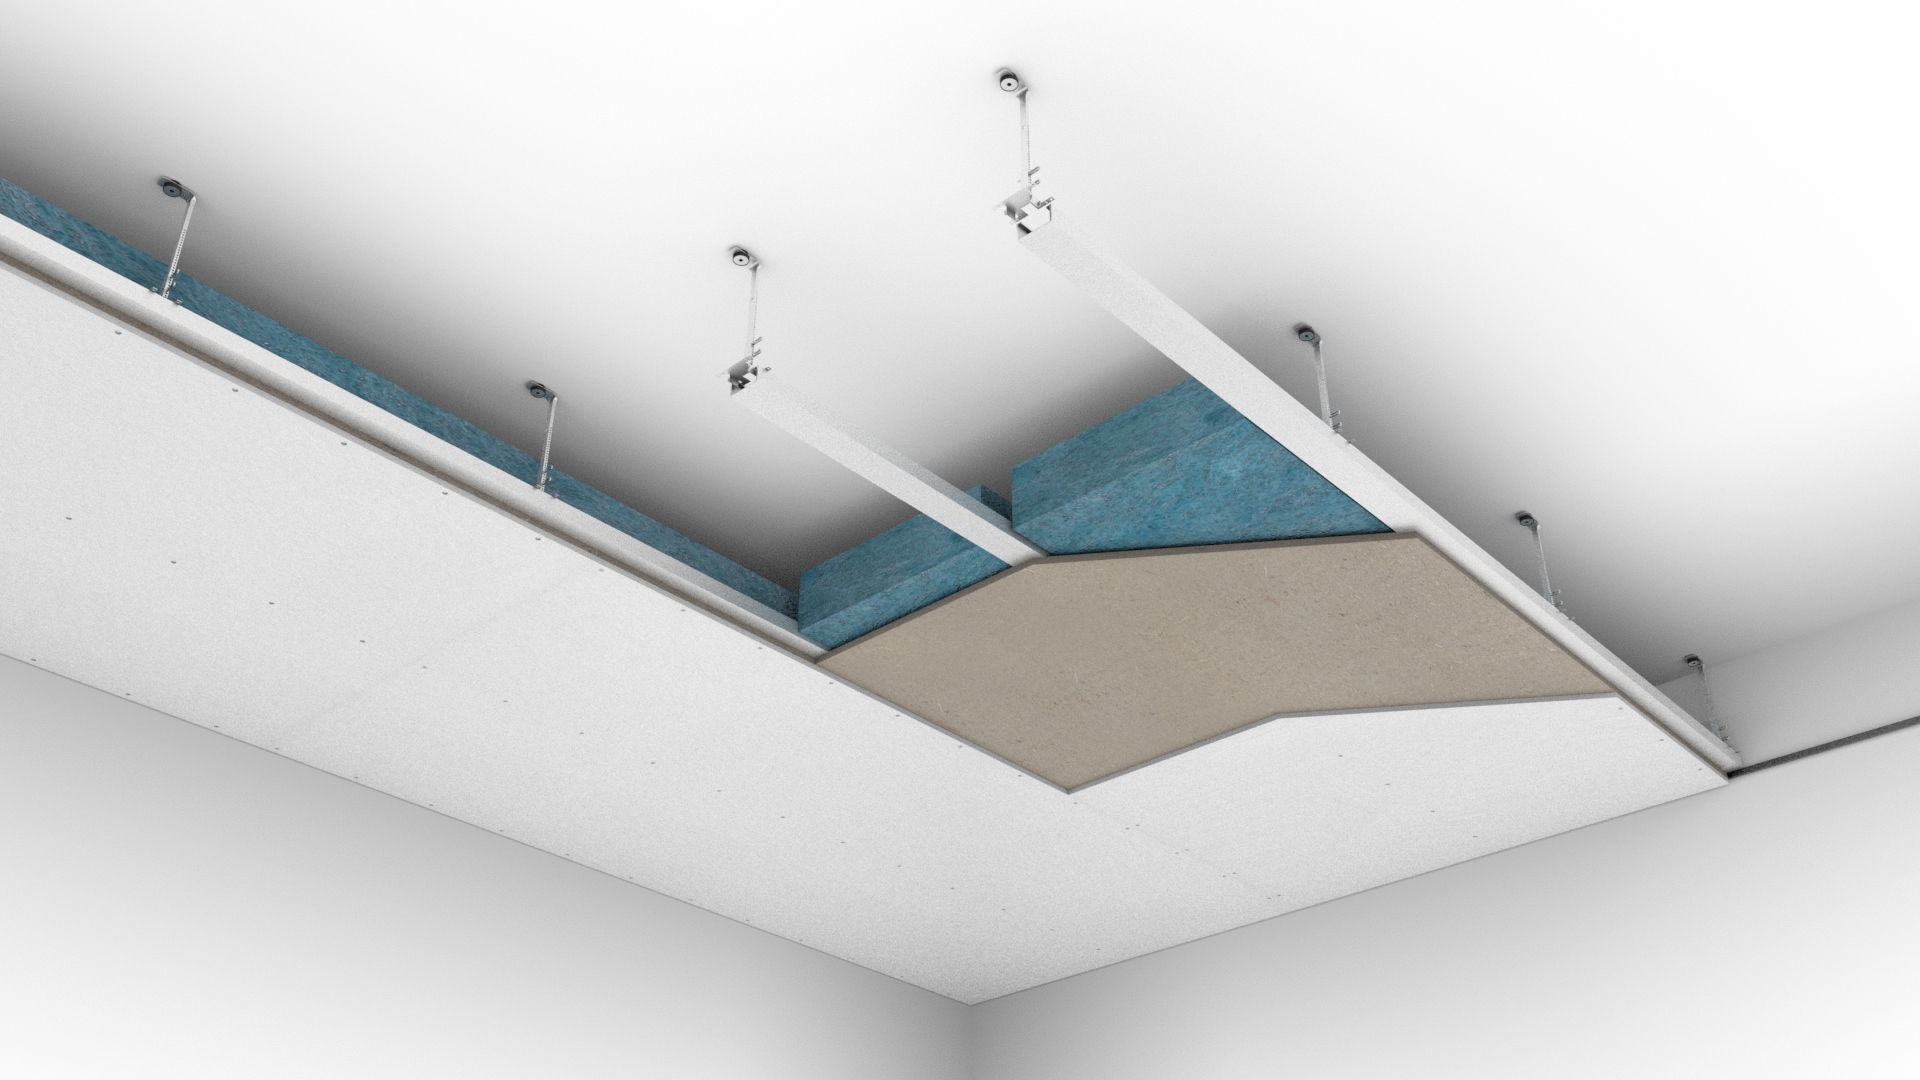 Faire un faux plafond acoustique avec des panneaux fixés sur des suspentes antivibratoires